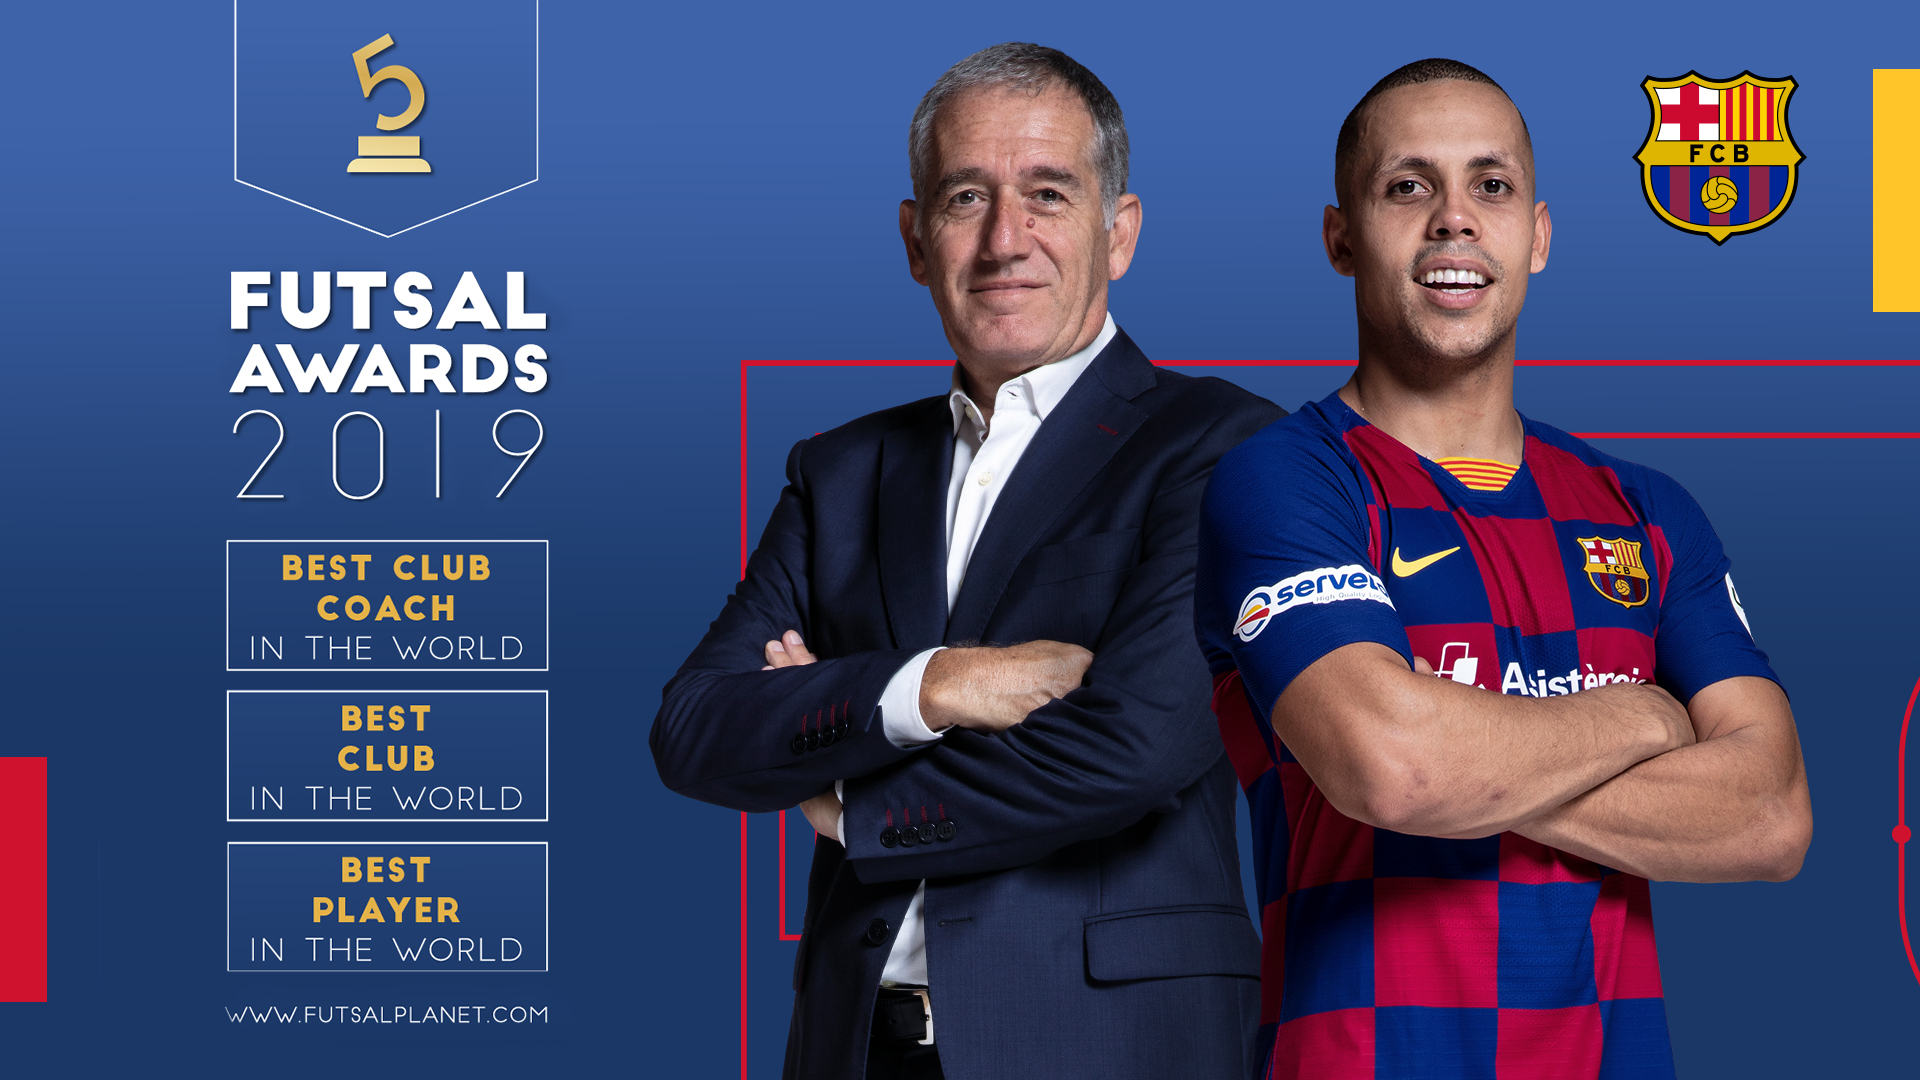 Ferrão o Melhor Jogador do Mundo do Futsal 2020/21 (Best player Futsal  Goals & Skils) 